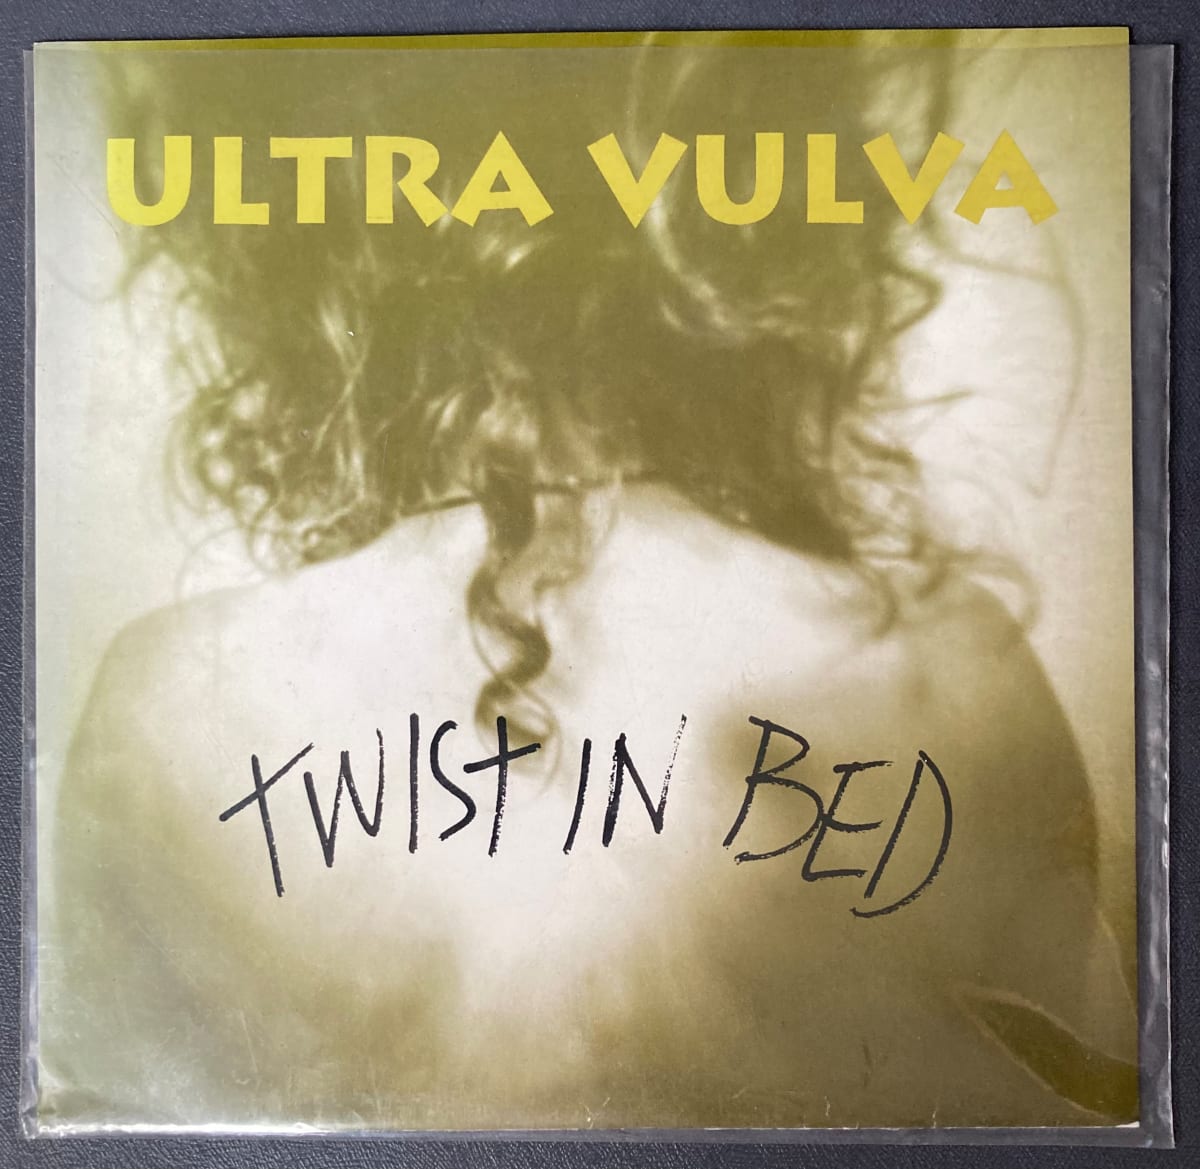 Twist In Bed by Ultra Vulva 